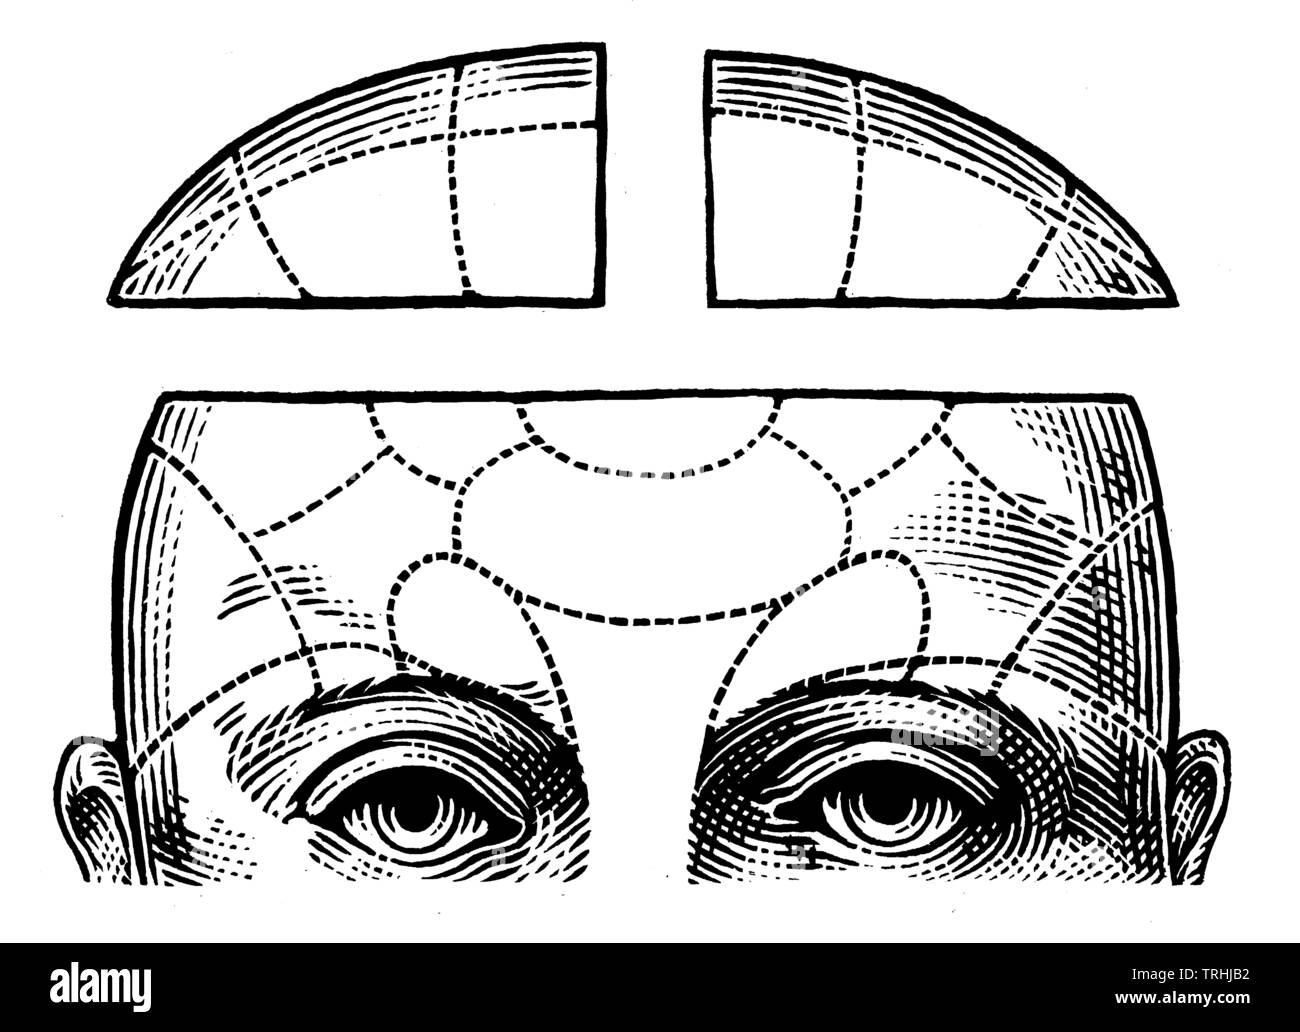 Dessin anatomique de la tête humaine Banque D'Images